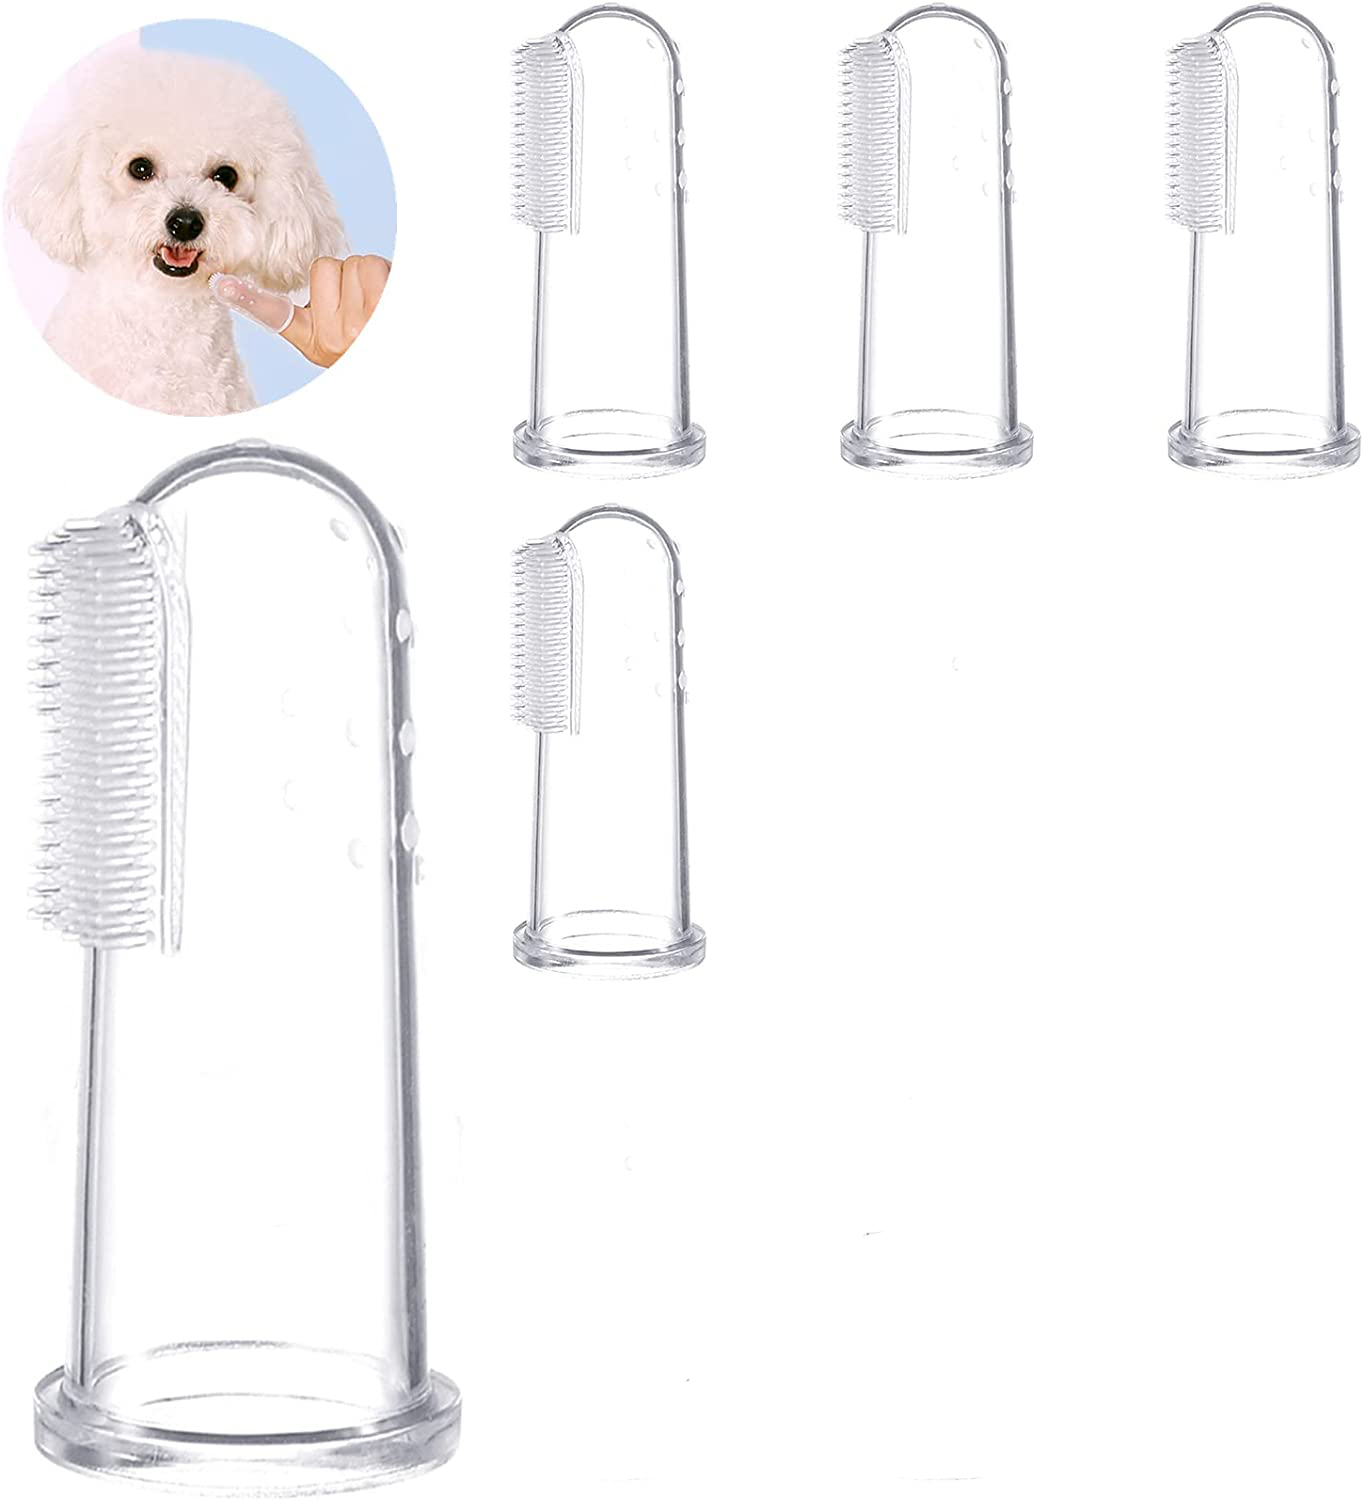 犬 歯ブラシ 歯磨き ハブラシ シリコン 犬用 歯ブラシ 5個セット ペット